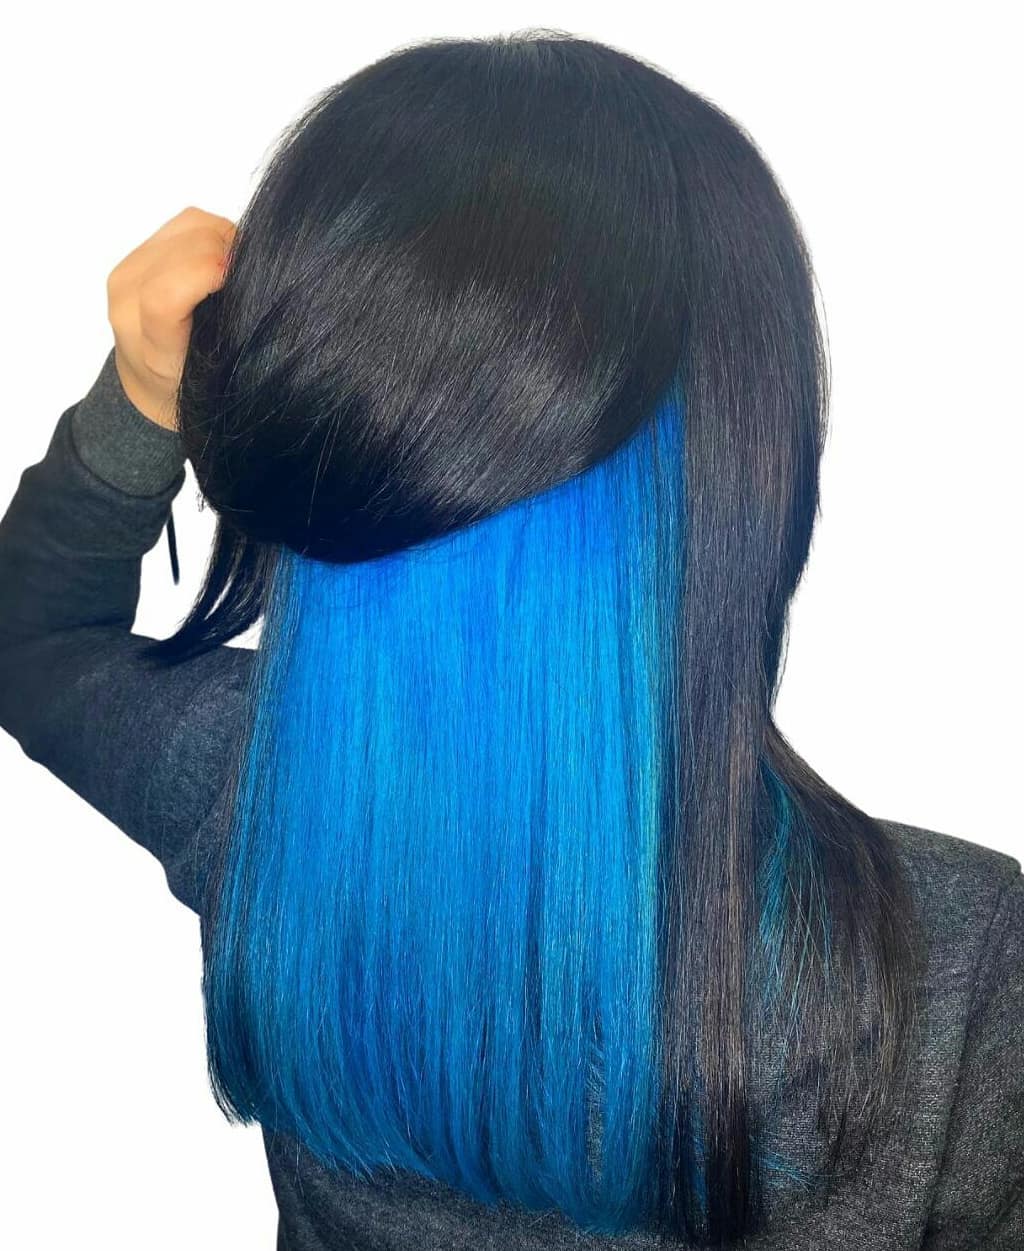 peekaboo azul em cabelo preto